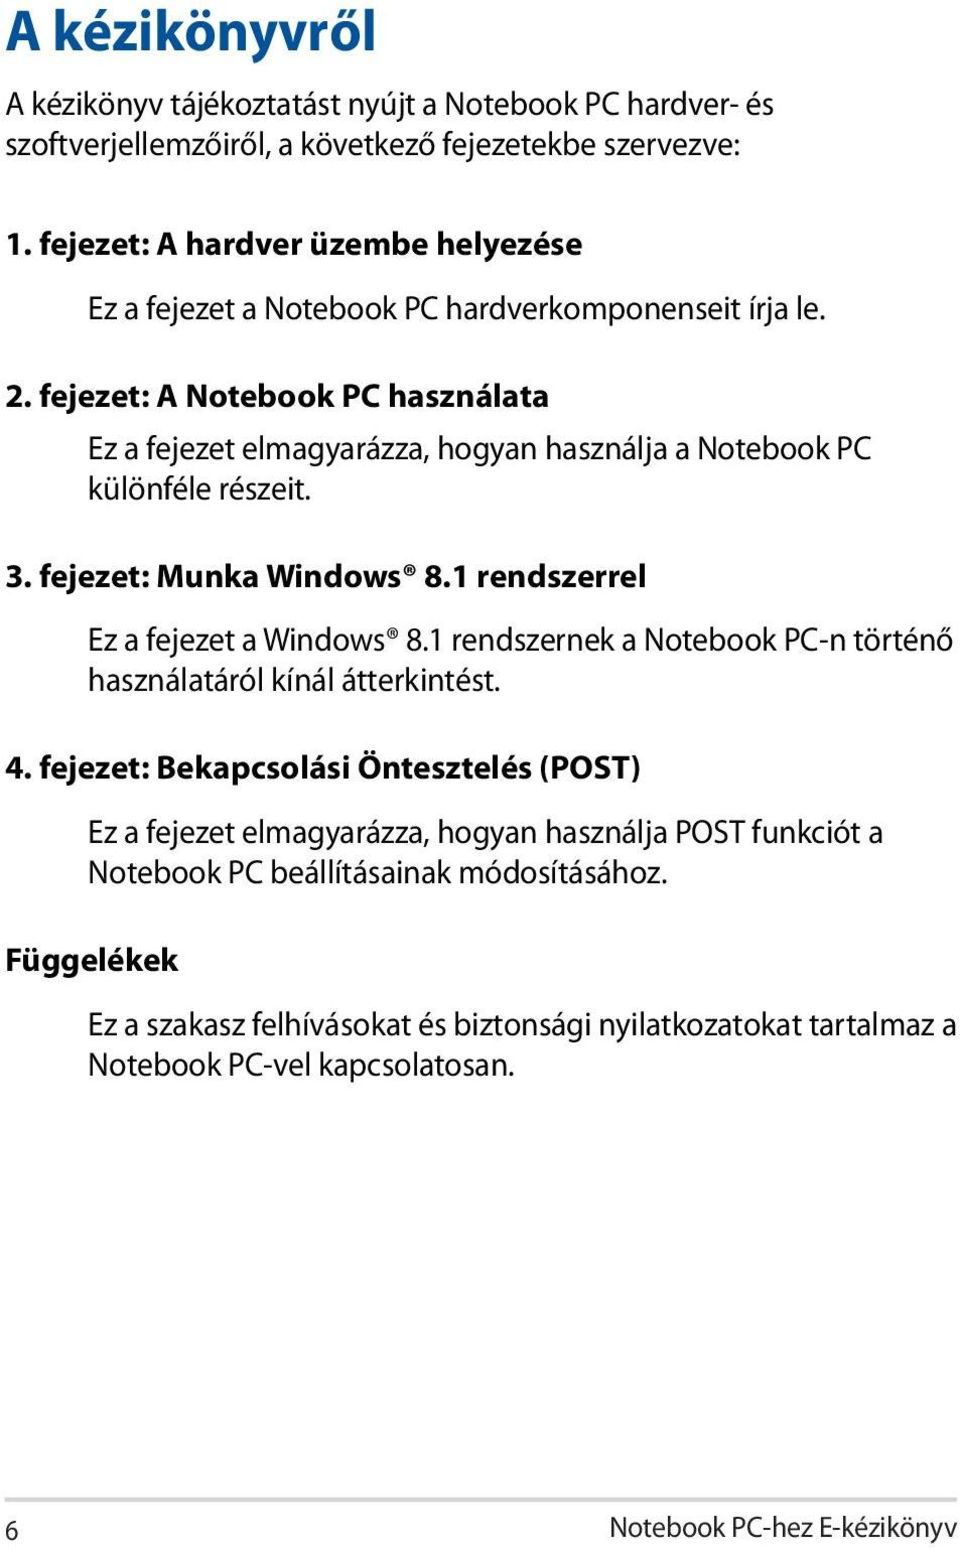 fejezet: A Notebook PC használata Ez a fejezet elmagyarázza, hogyan használja a Notebook PC különféle részeit. 3. fejezet: Munka Windows 8.1 rendszerrel Ez a fejezet a Windows 8.